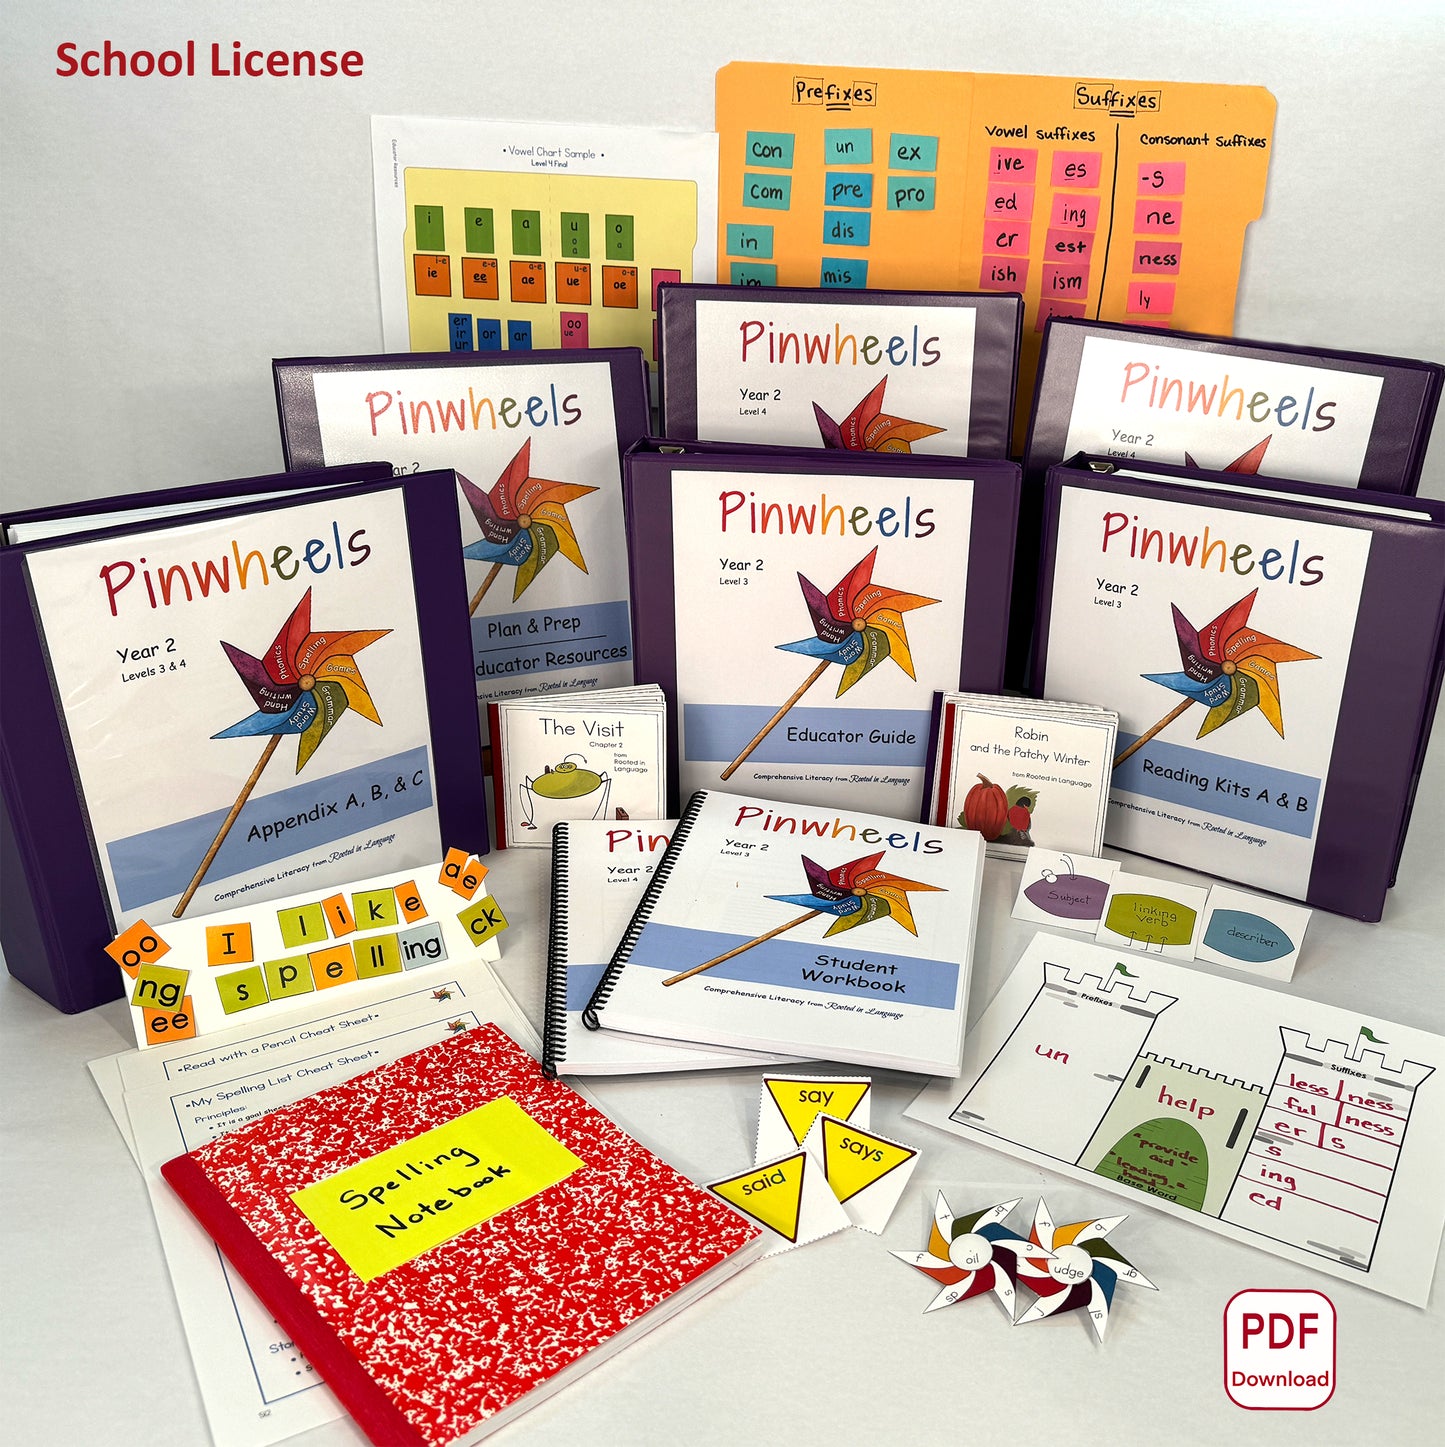 Pinwheels School License